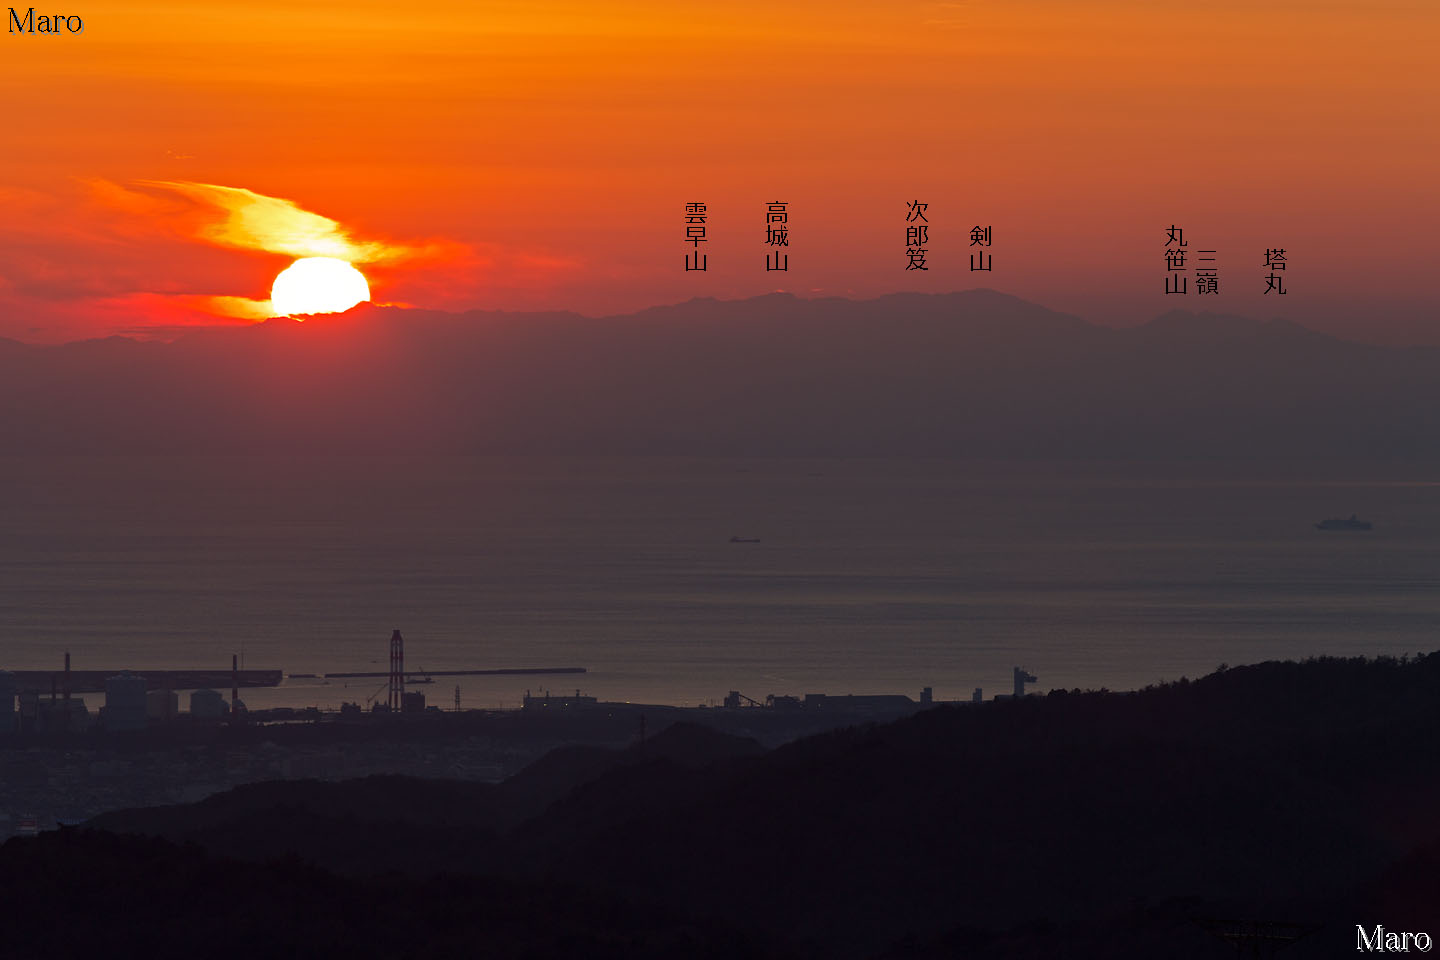 雲山峰から剣山地に沈む夕日、剣山、三嶺を望む 和歌山市 2012年12月